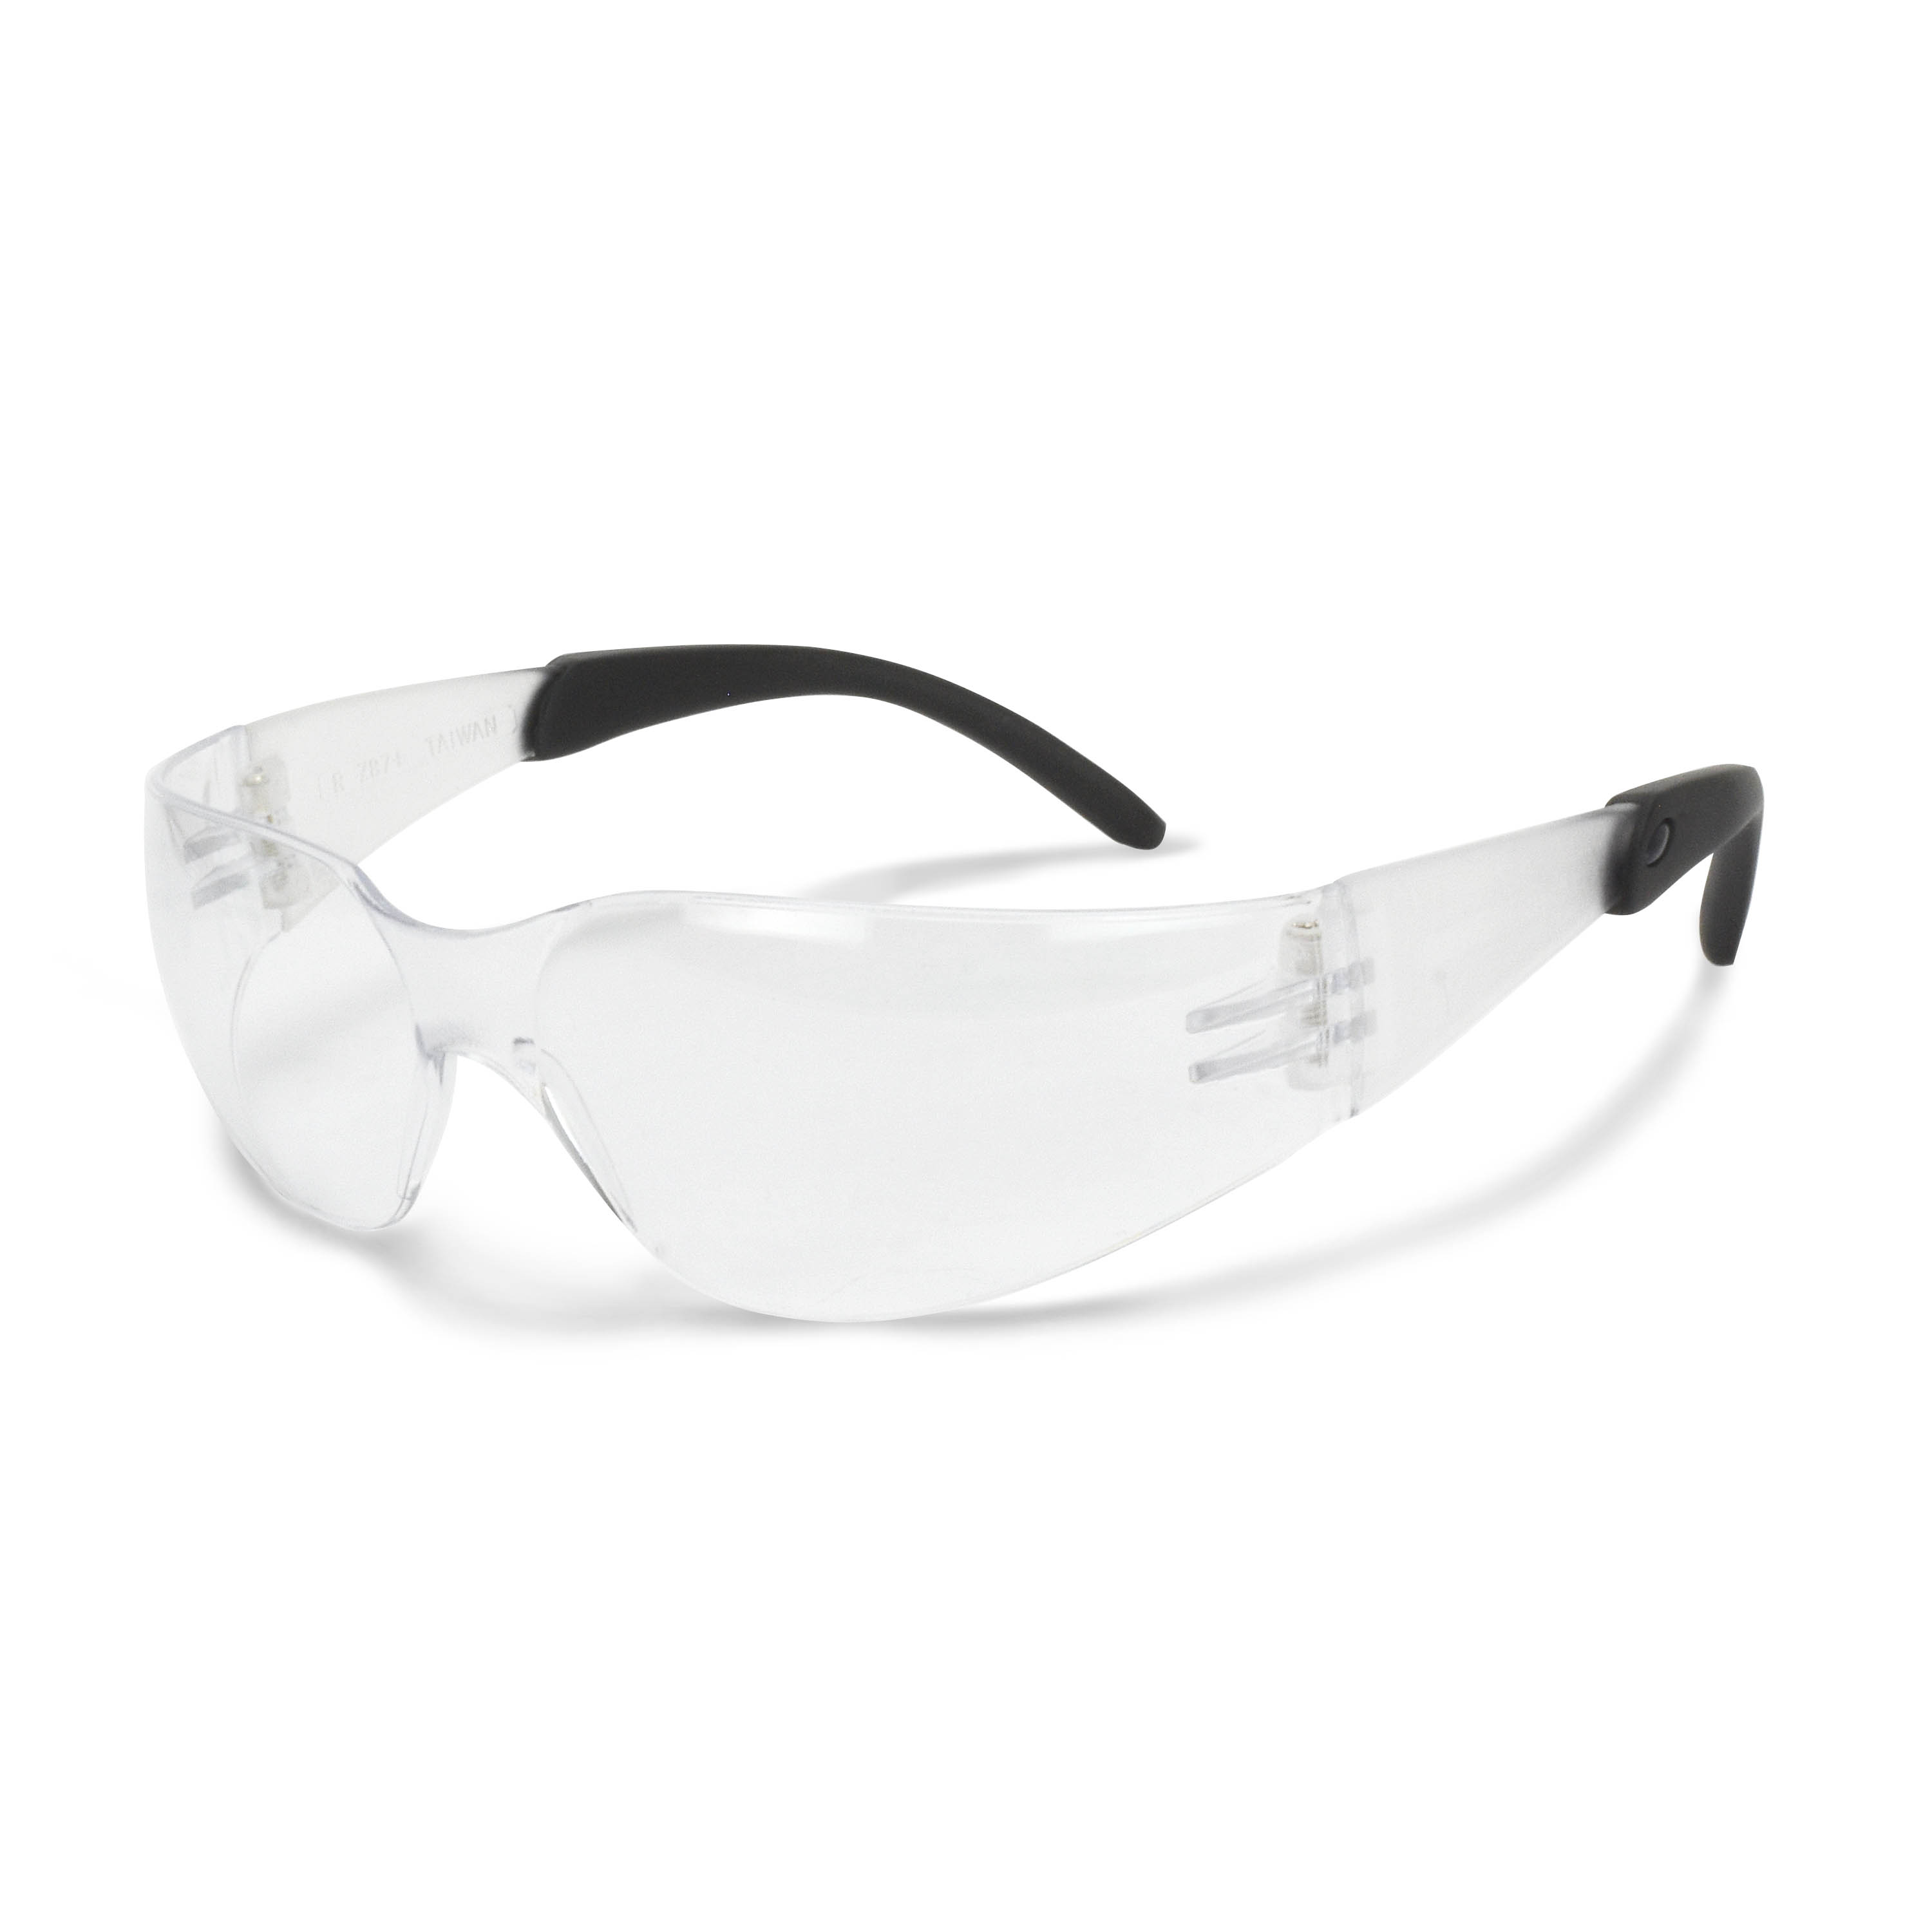 Mirage RT™ Safety Eyewear - Clear Frame - Clear Anti-Fog Lens - Anti-Fog Lens